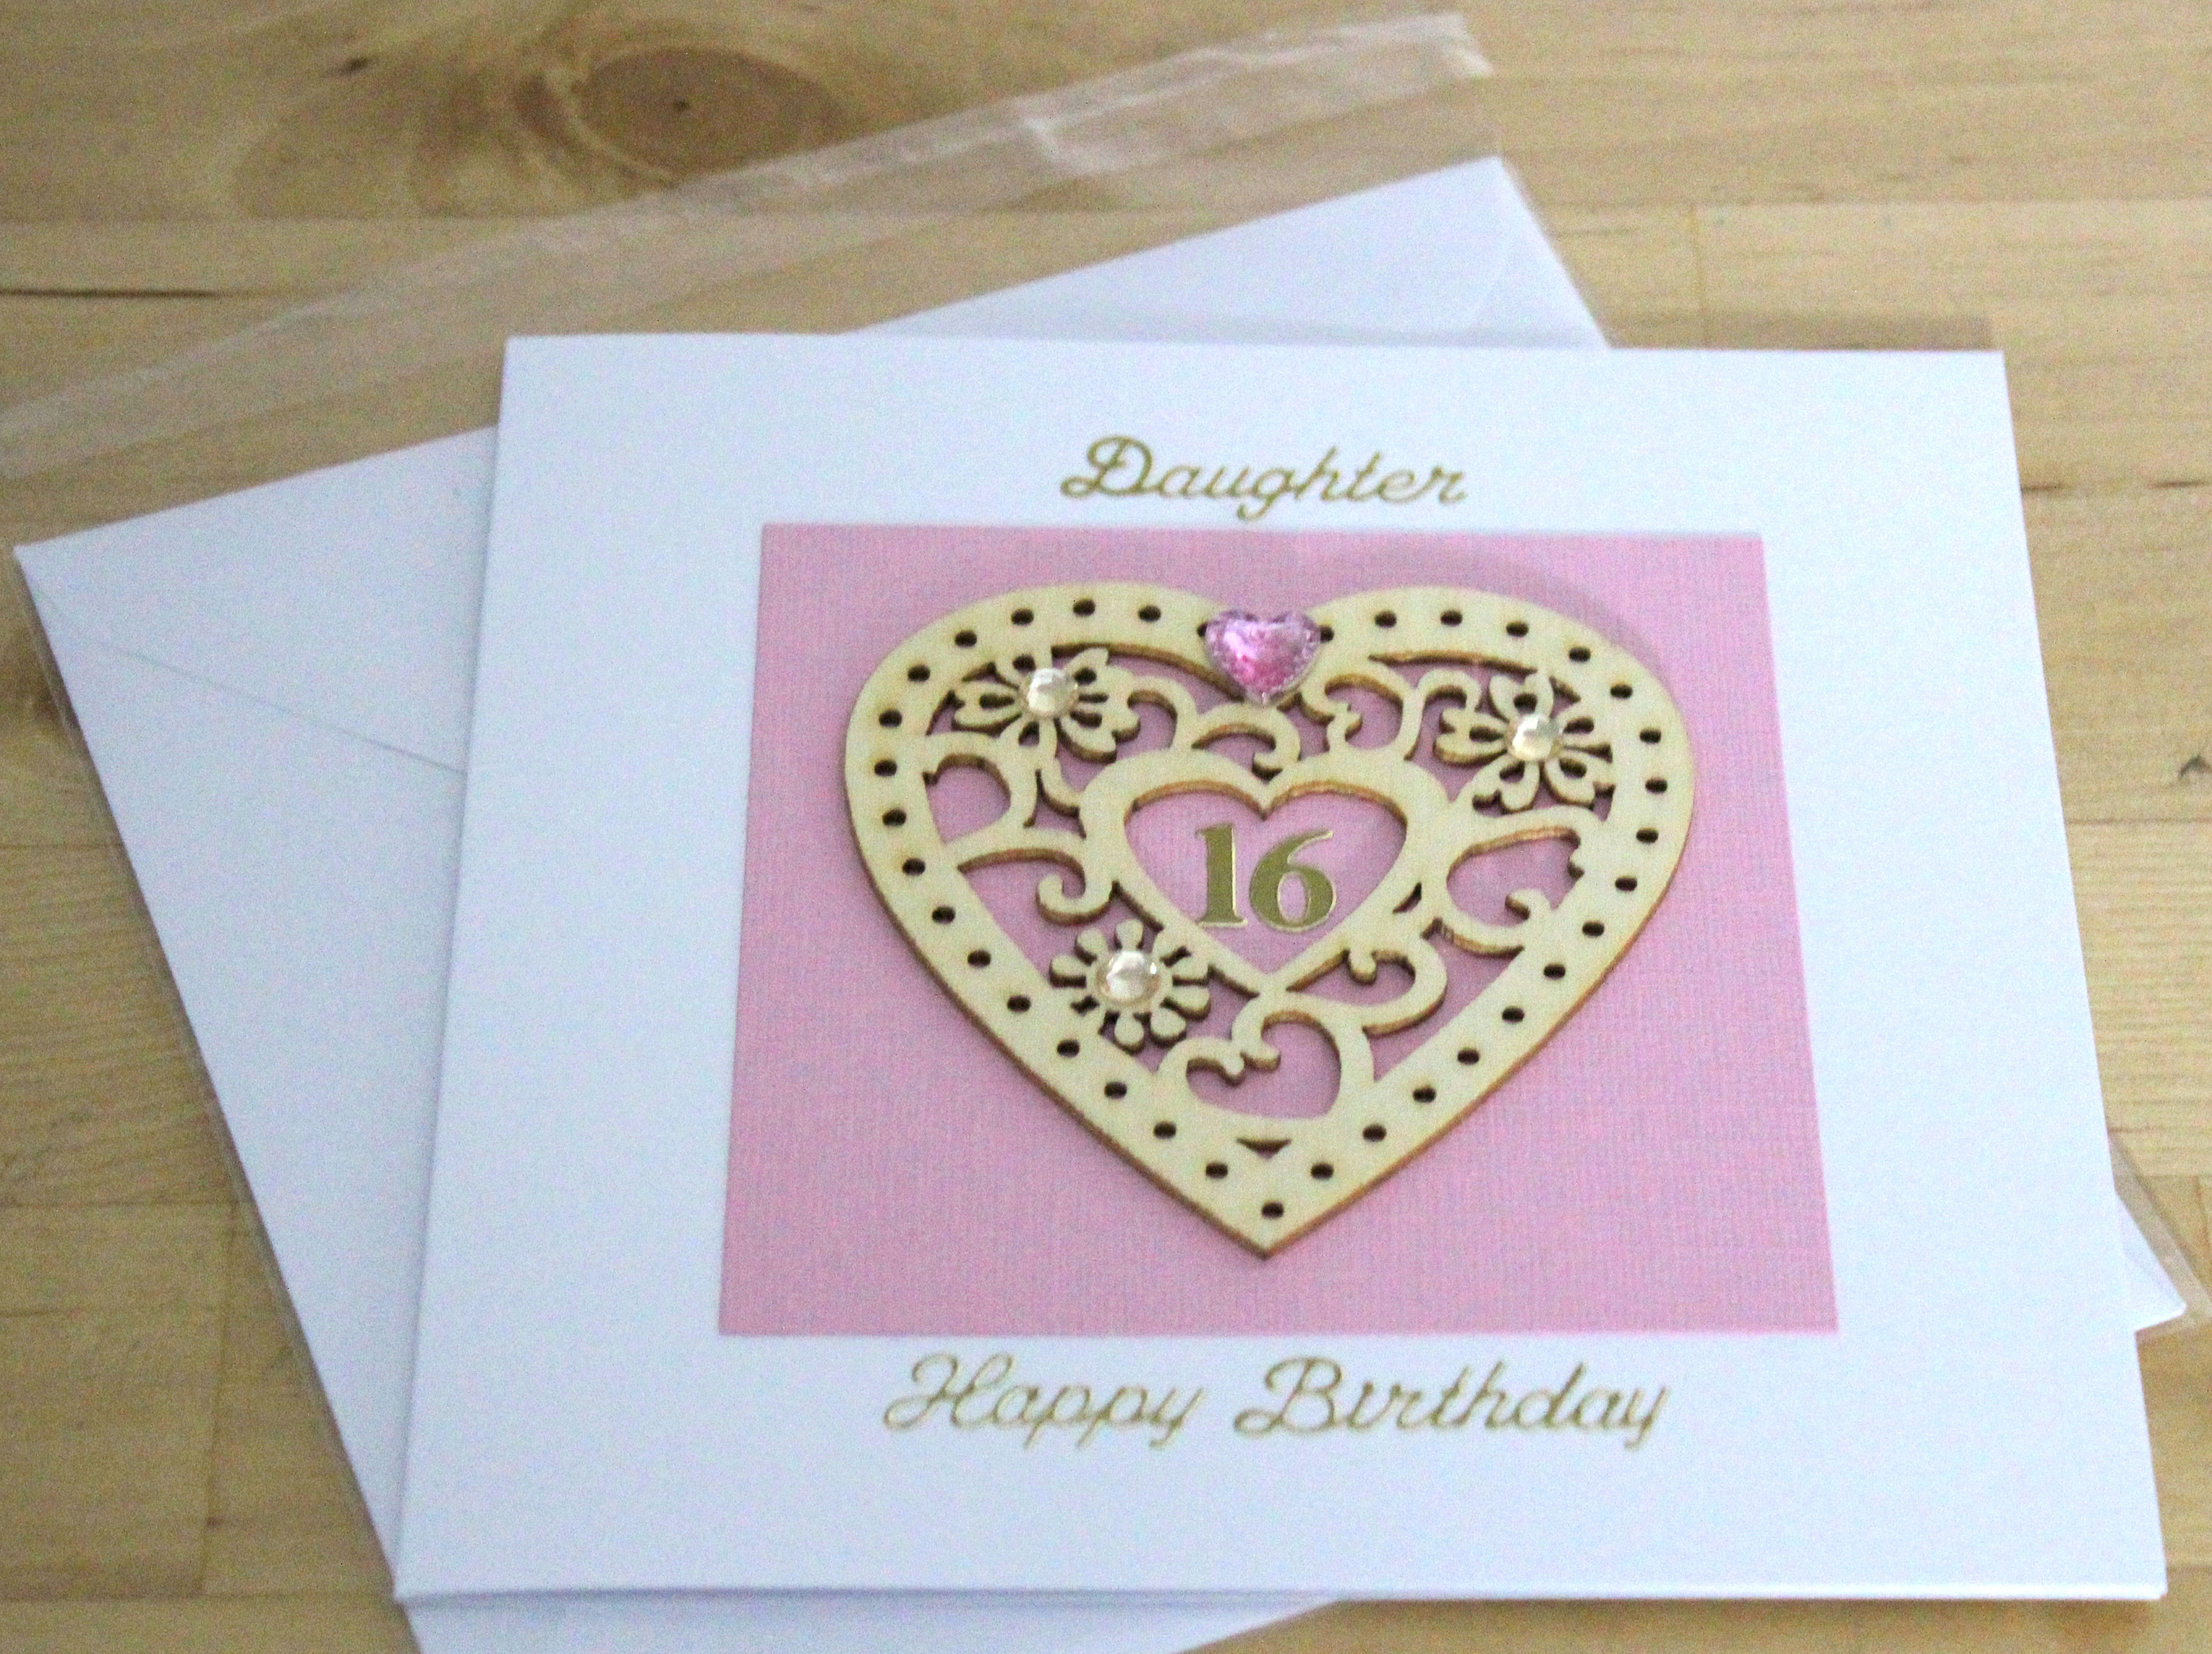 16Th Birthday Card Ideas 16th Birthday Card Gift Luxury Unique16th Birthday Card Gift Personalised 16th Birthday Card Gift Age 16 Cards Daughter 16th Birthday